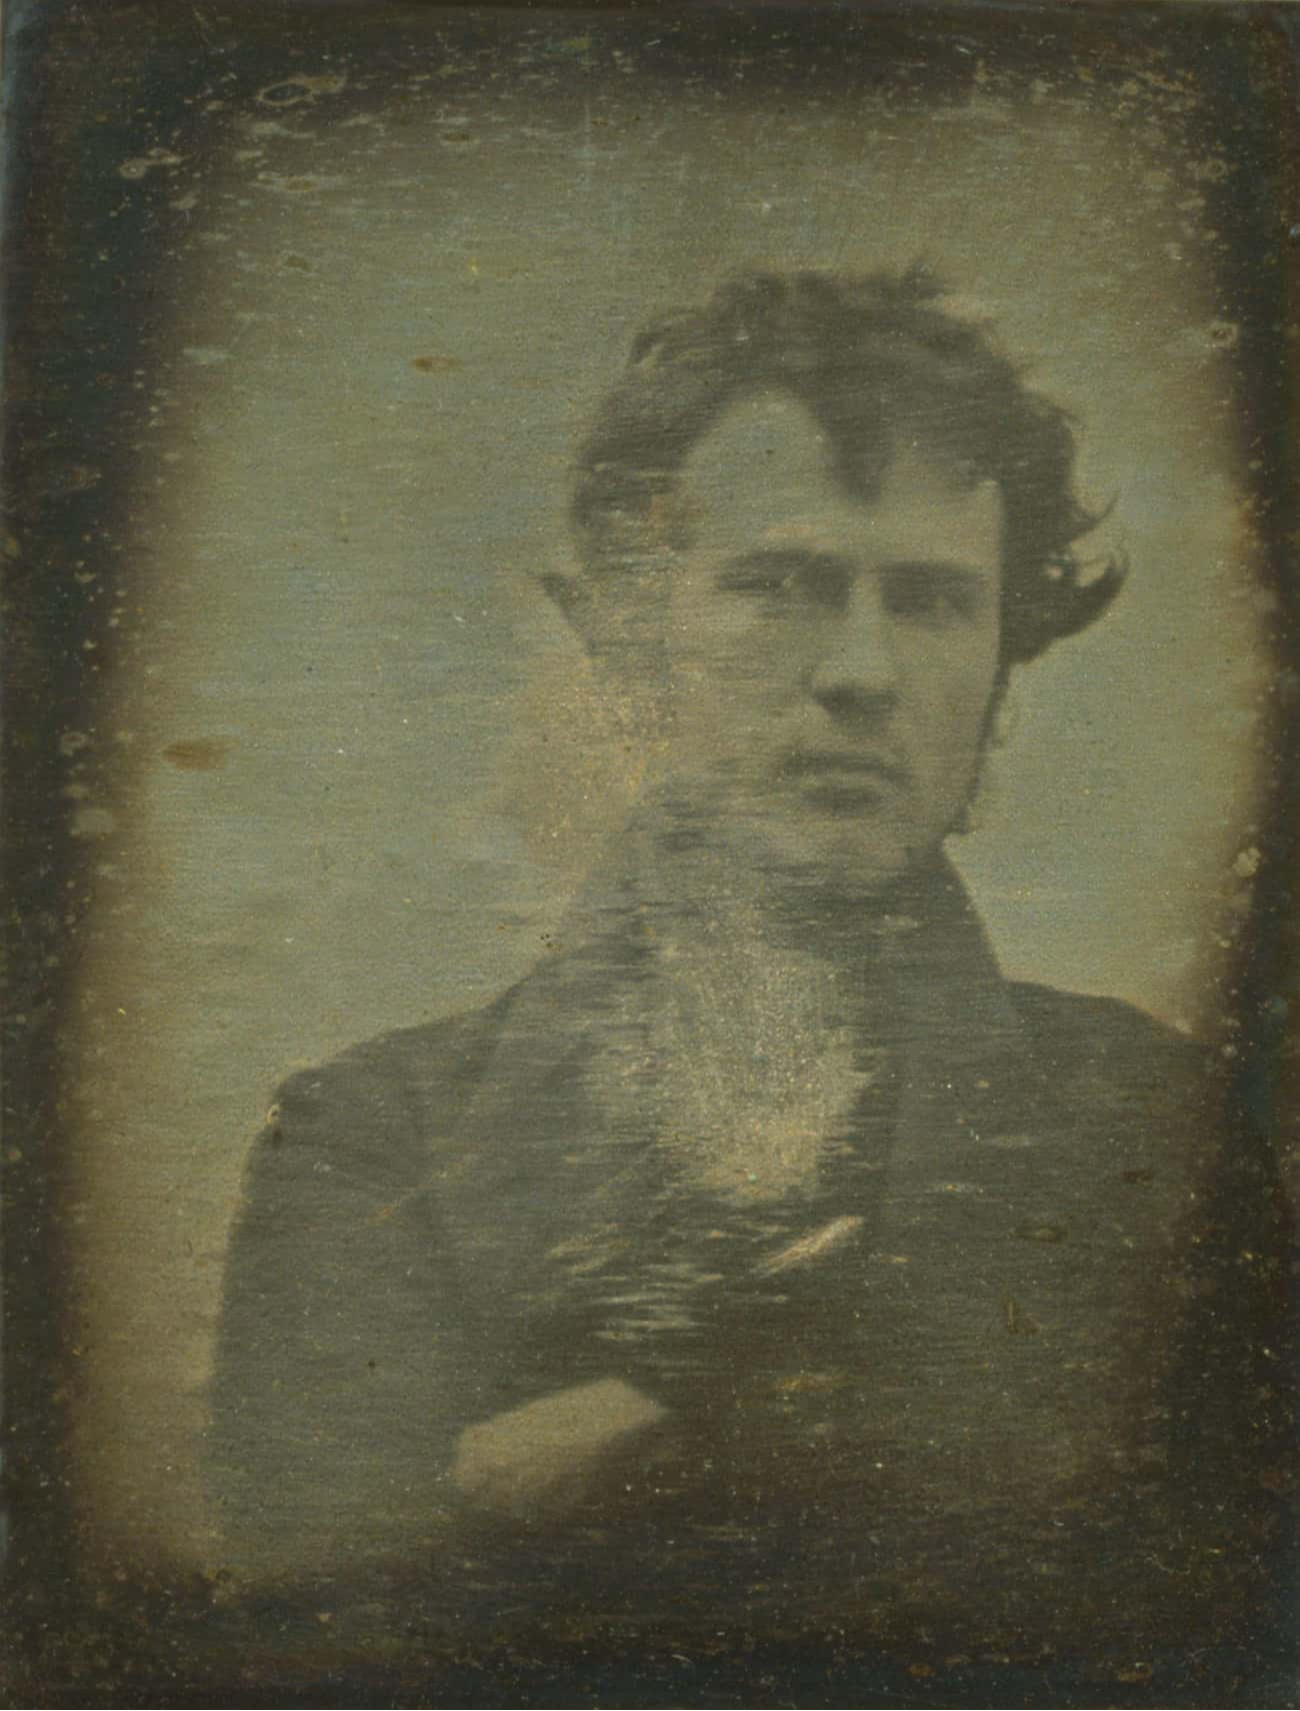 Robert Cornelius'a ait bu fotoğraf 1839'da çekilmiş.